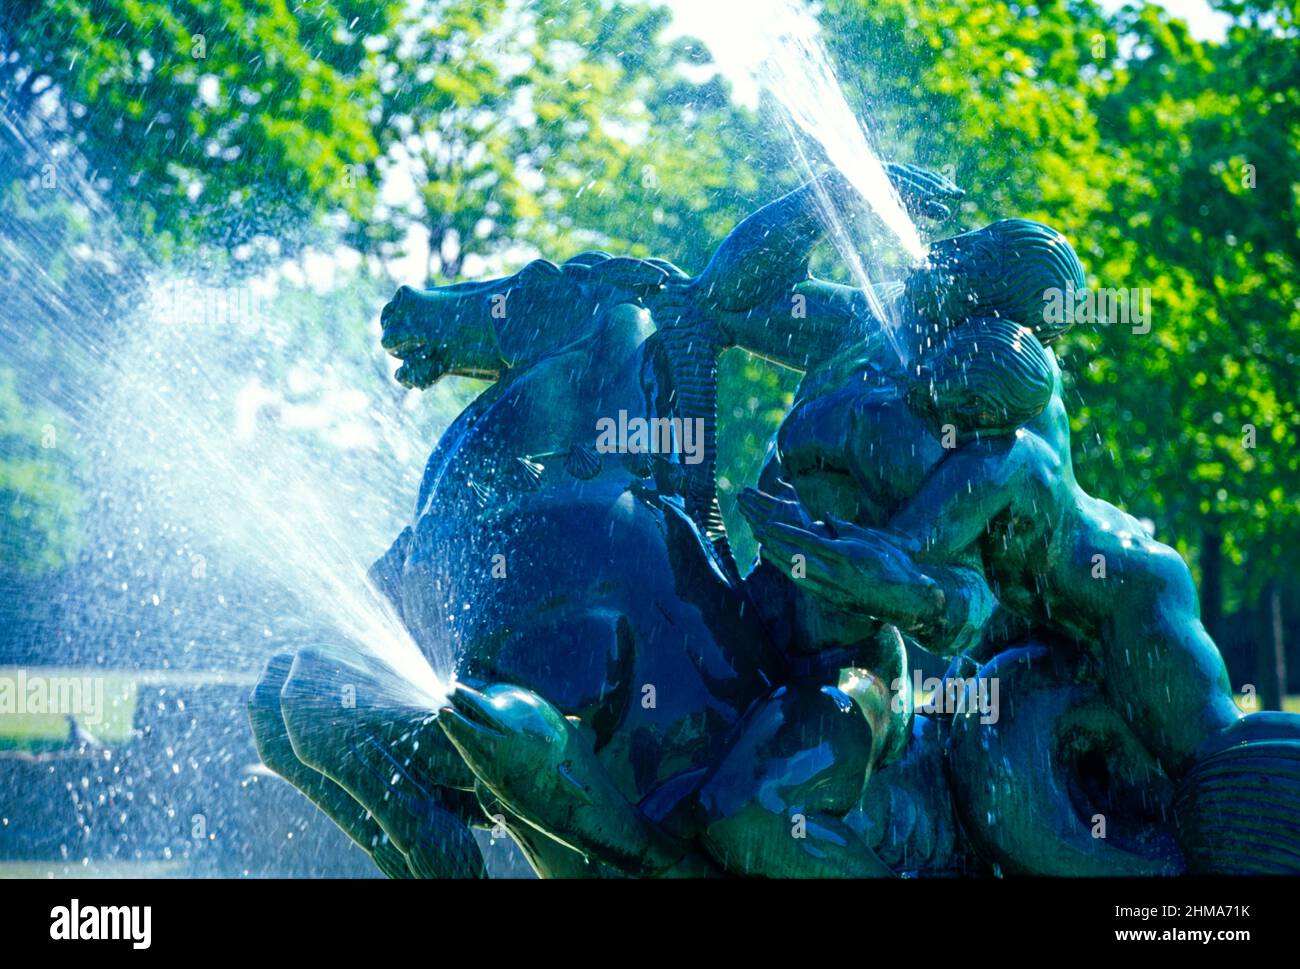 UK, Merseyside, Port Sunlight, fountain, sculpture, Stock Photo